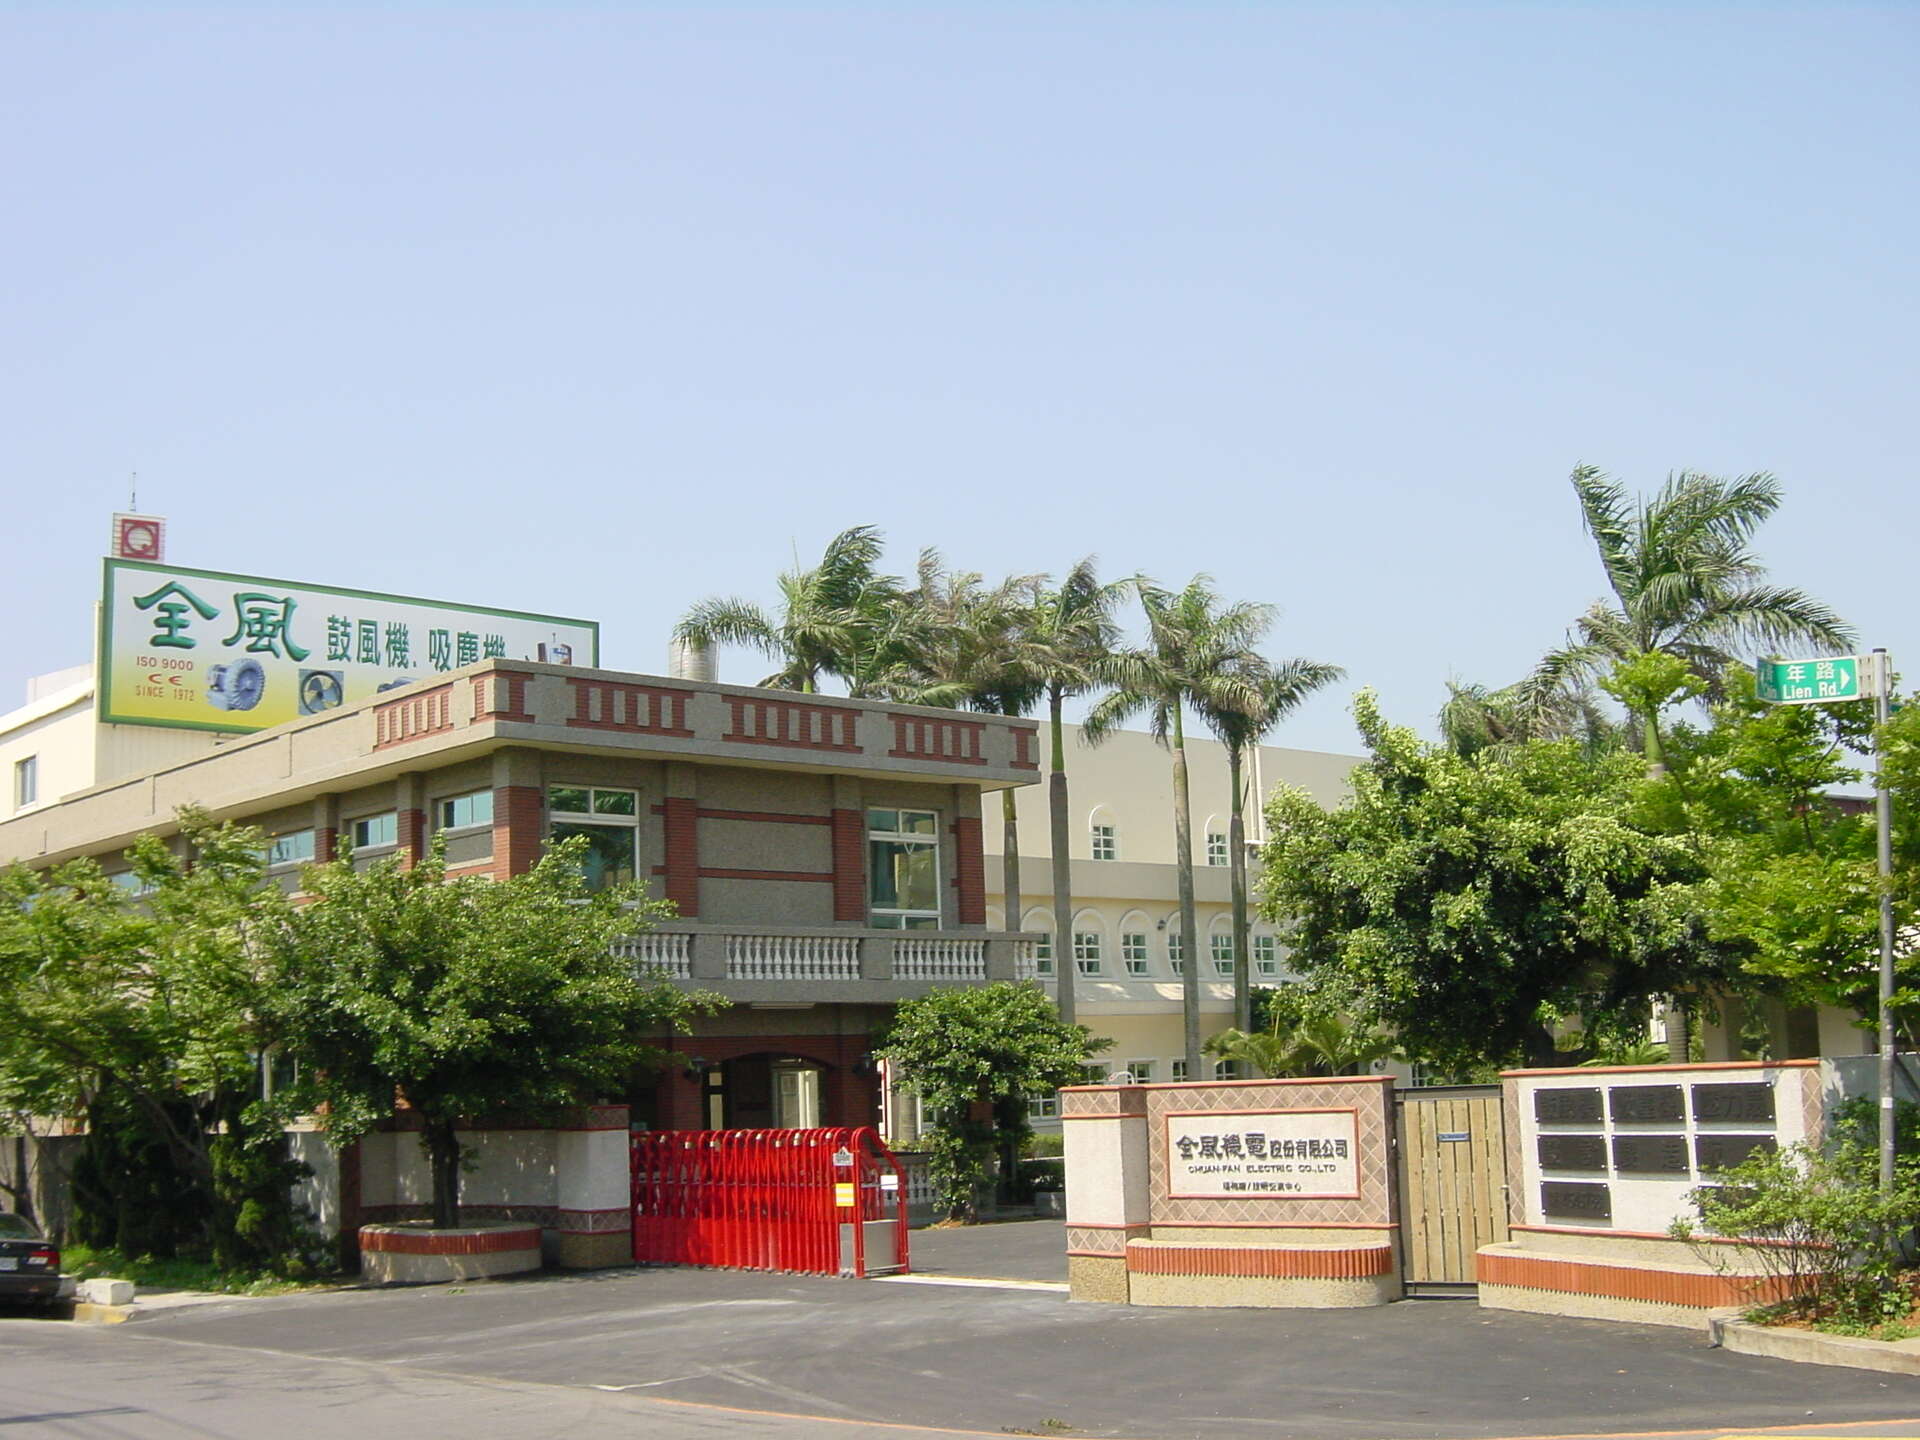 Chuan Fan Headquarters